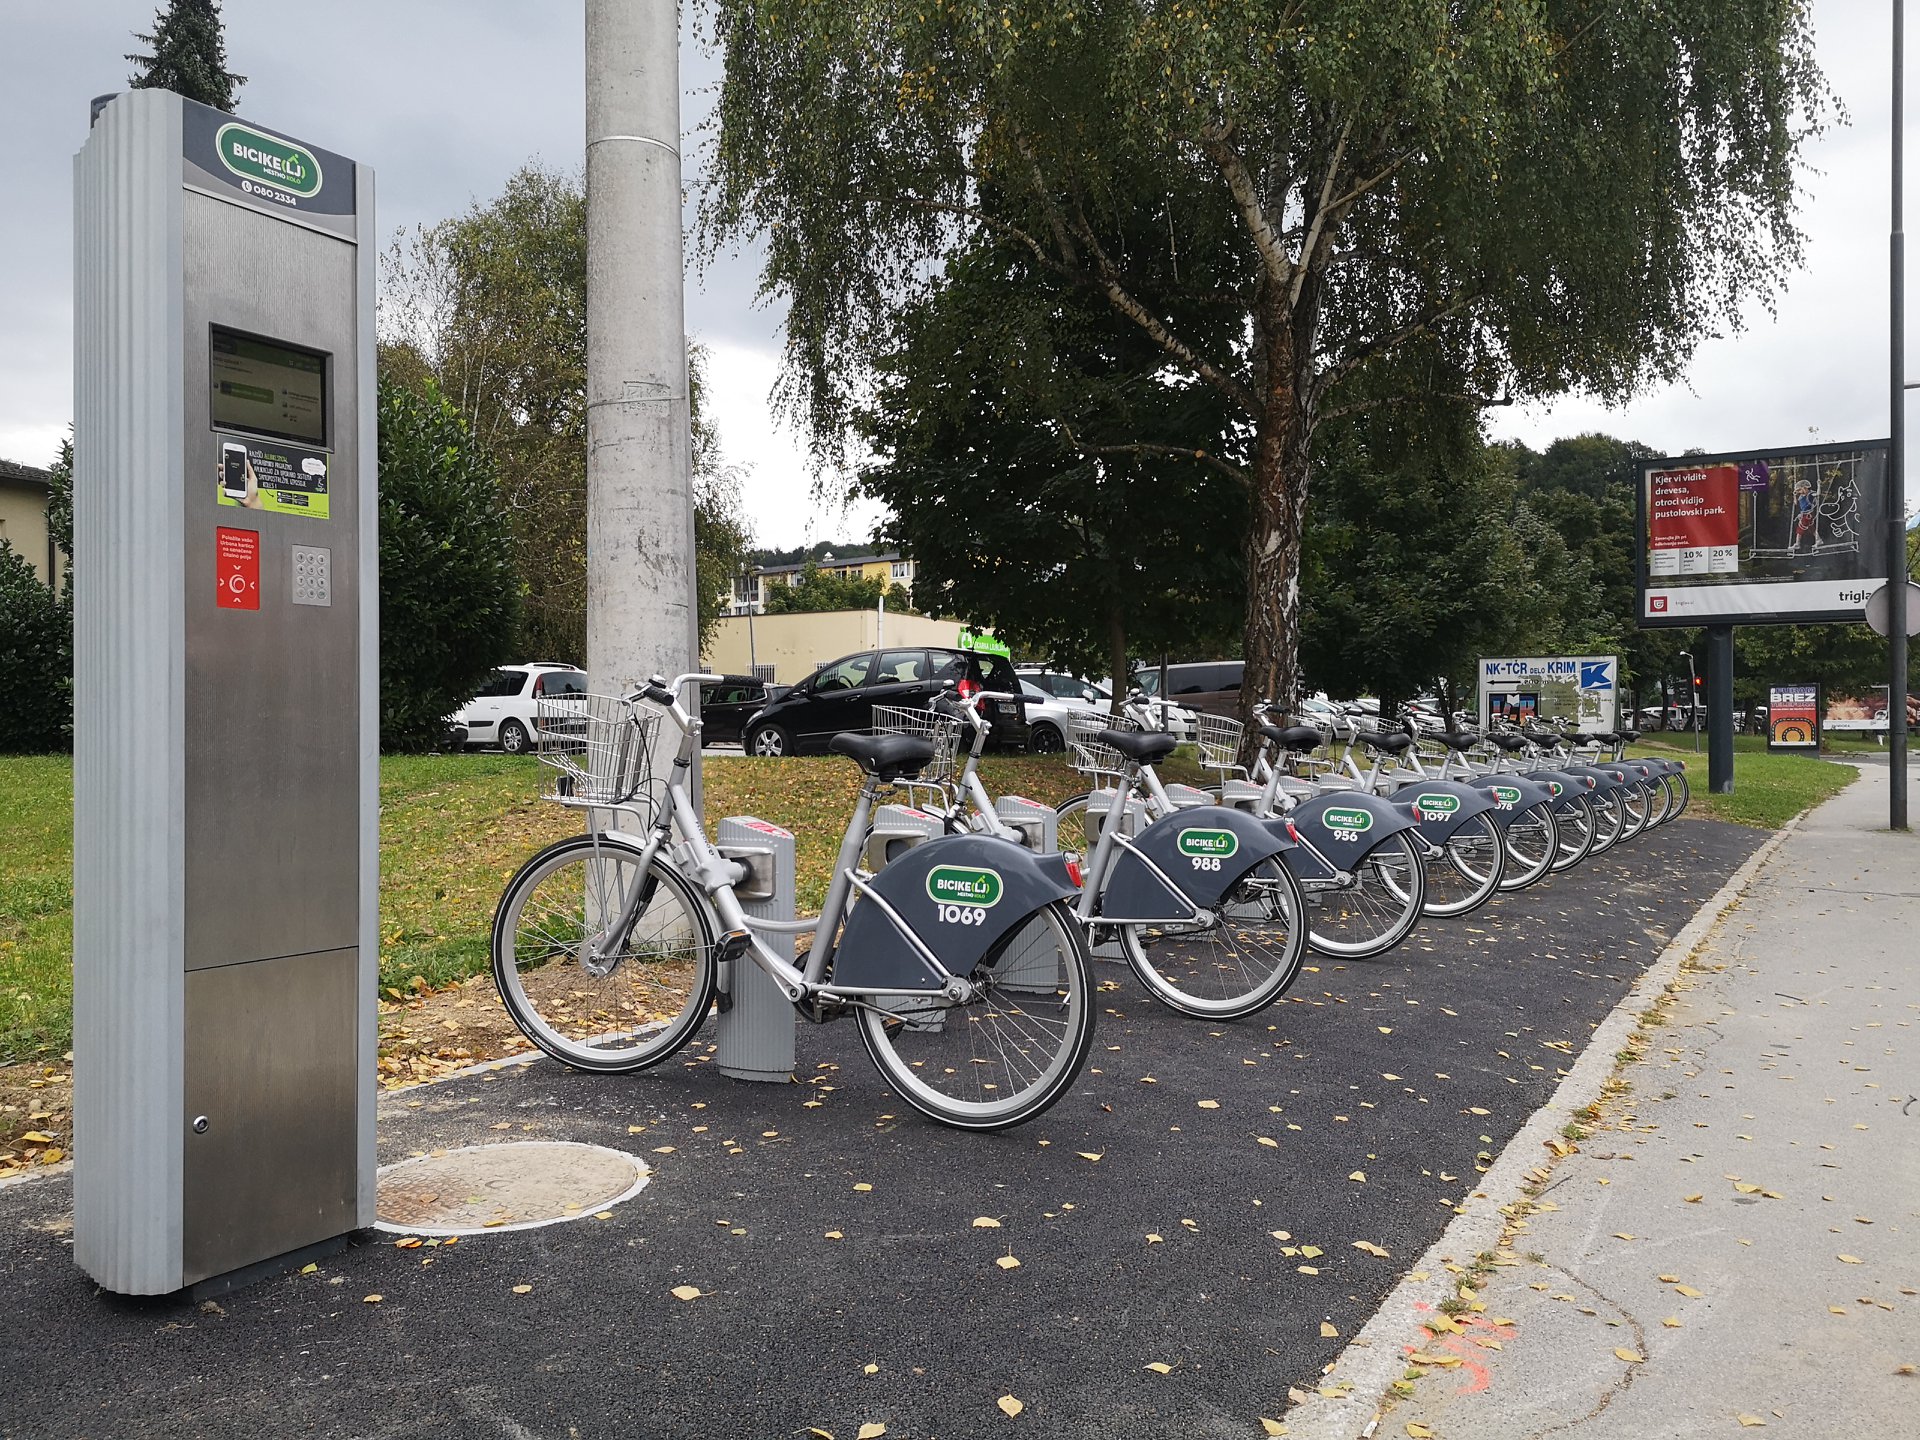 DNEVNA: V Mariboru bo urejenih petnajst postaj s 130 kolesi za izposojo